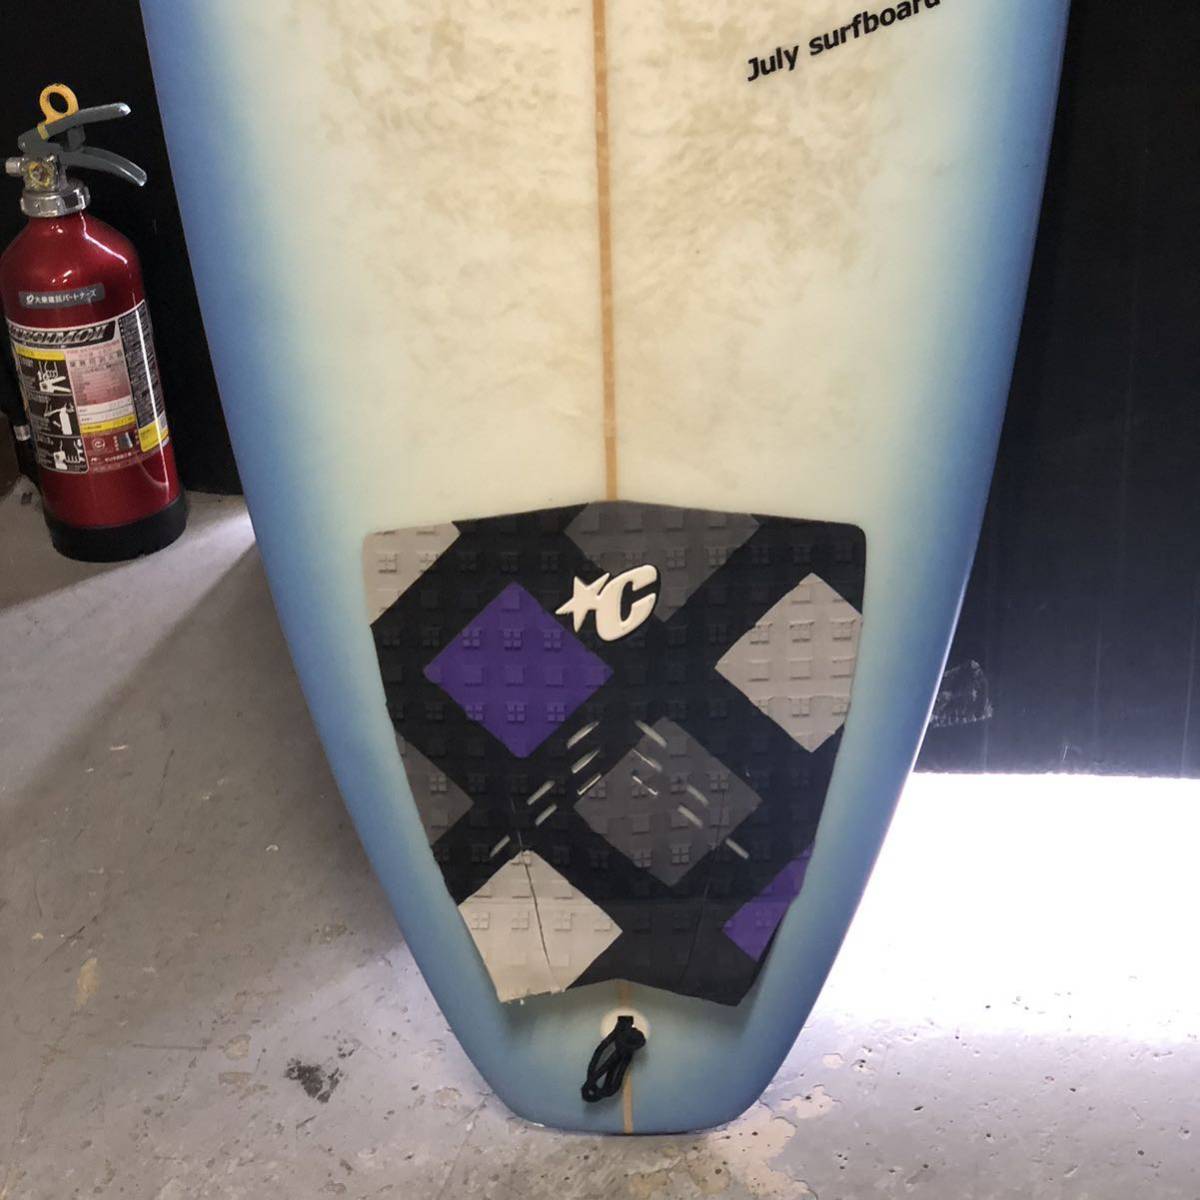 【引取限定】 JUL July surfboard サーフボード 約220cm BlackmStix 2.0 V2 FAM1 サーフィン ミドル 現状品 ジャンク品_画像5